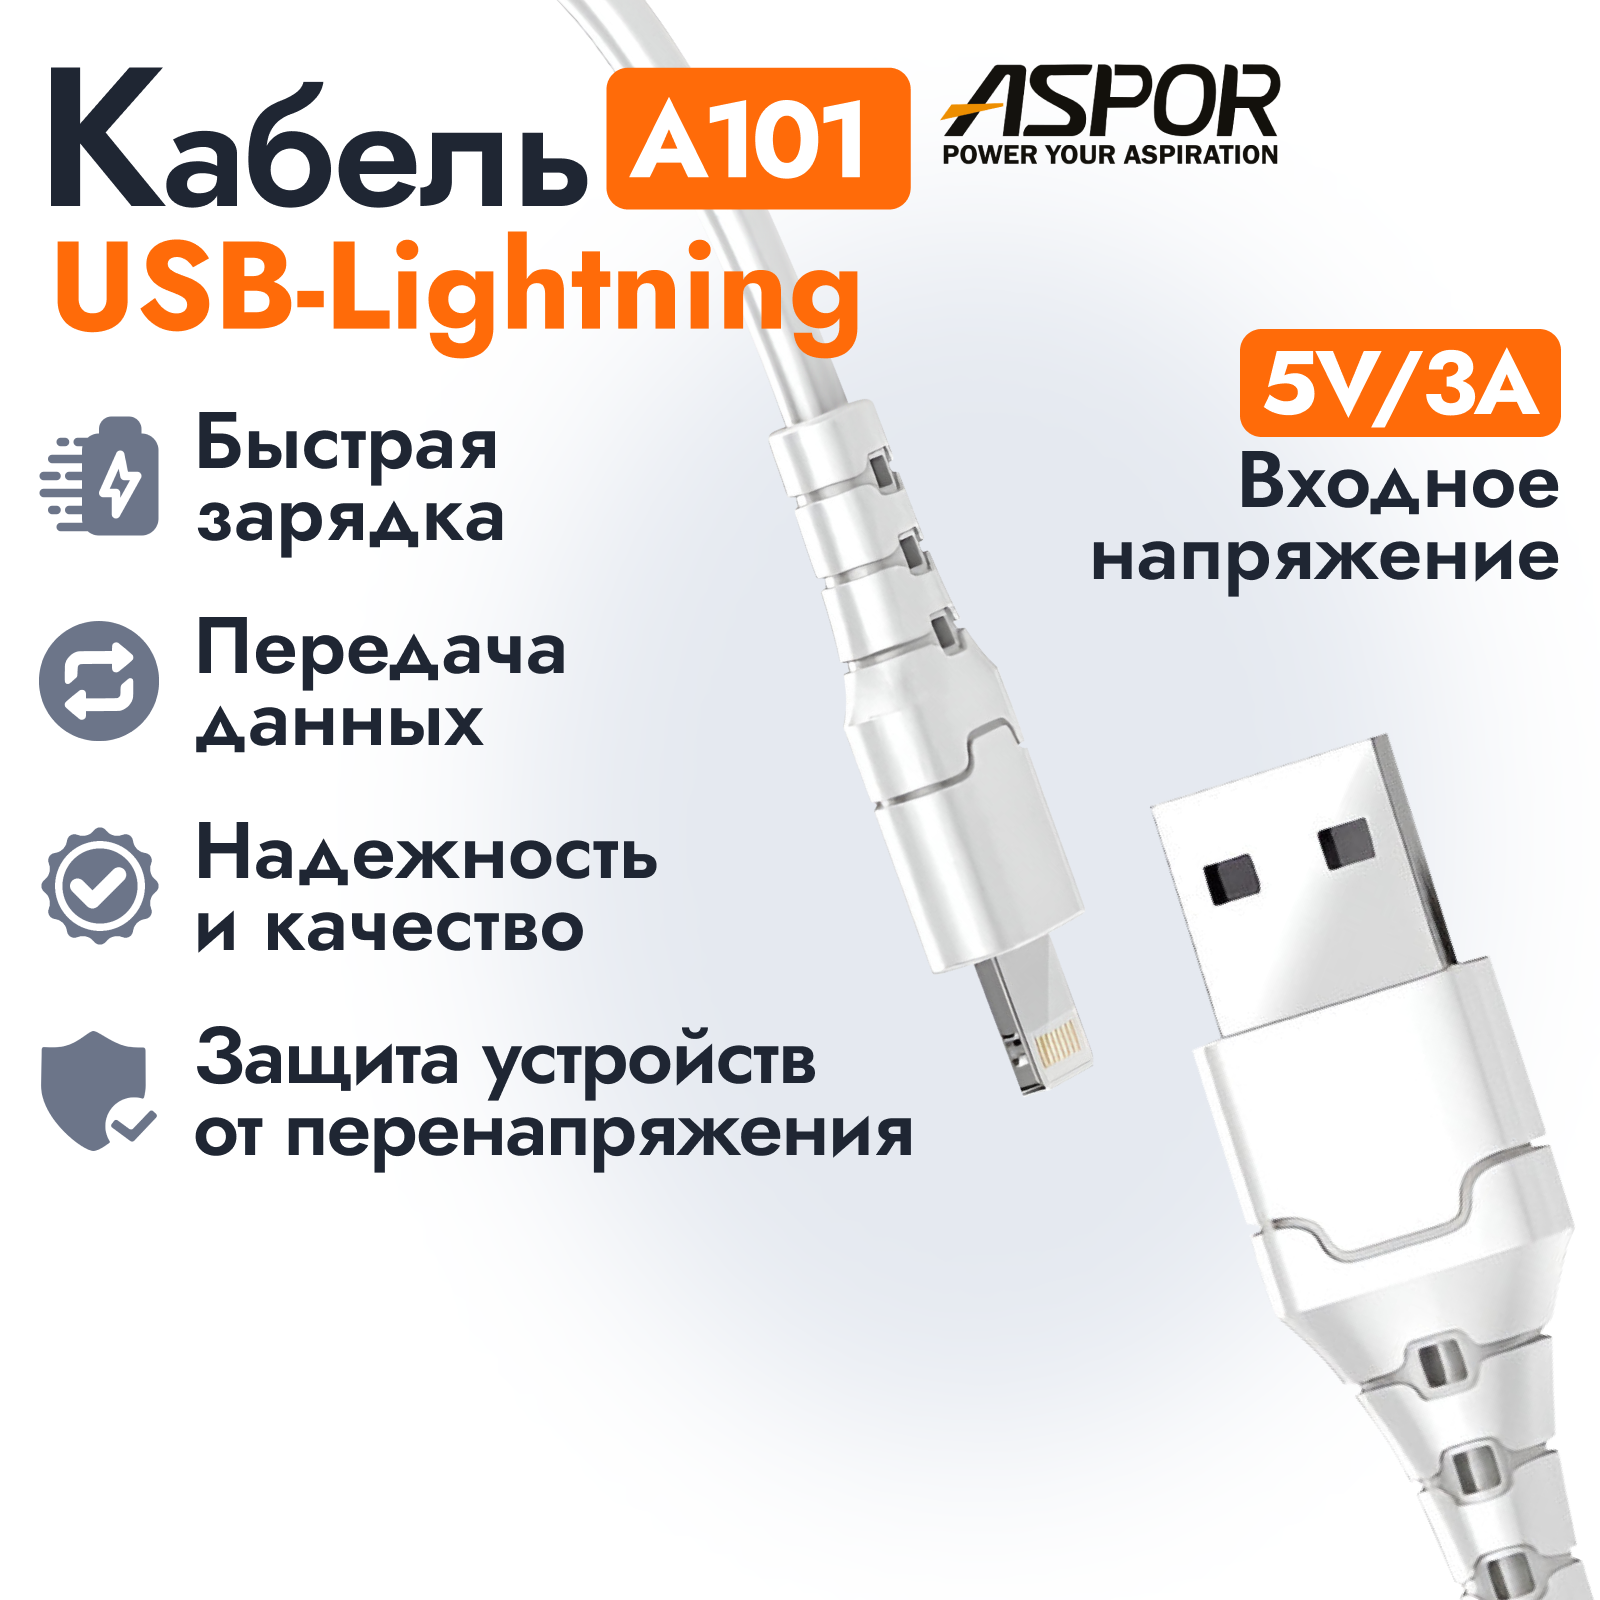 Кабель Aspor A101 USB-Lightning для быстрой передачи данных и зарядки смартфонов, планшетов 1 метр